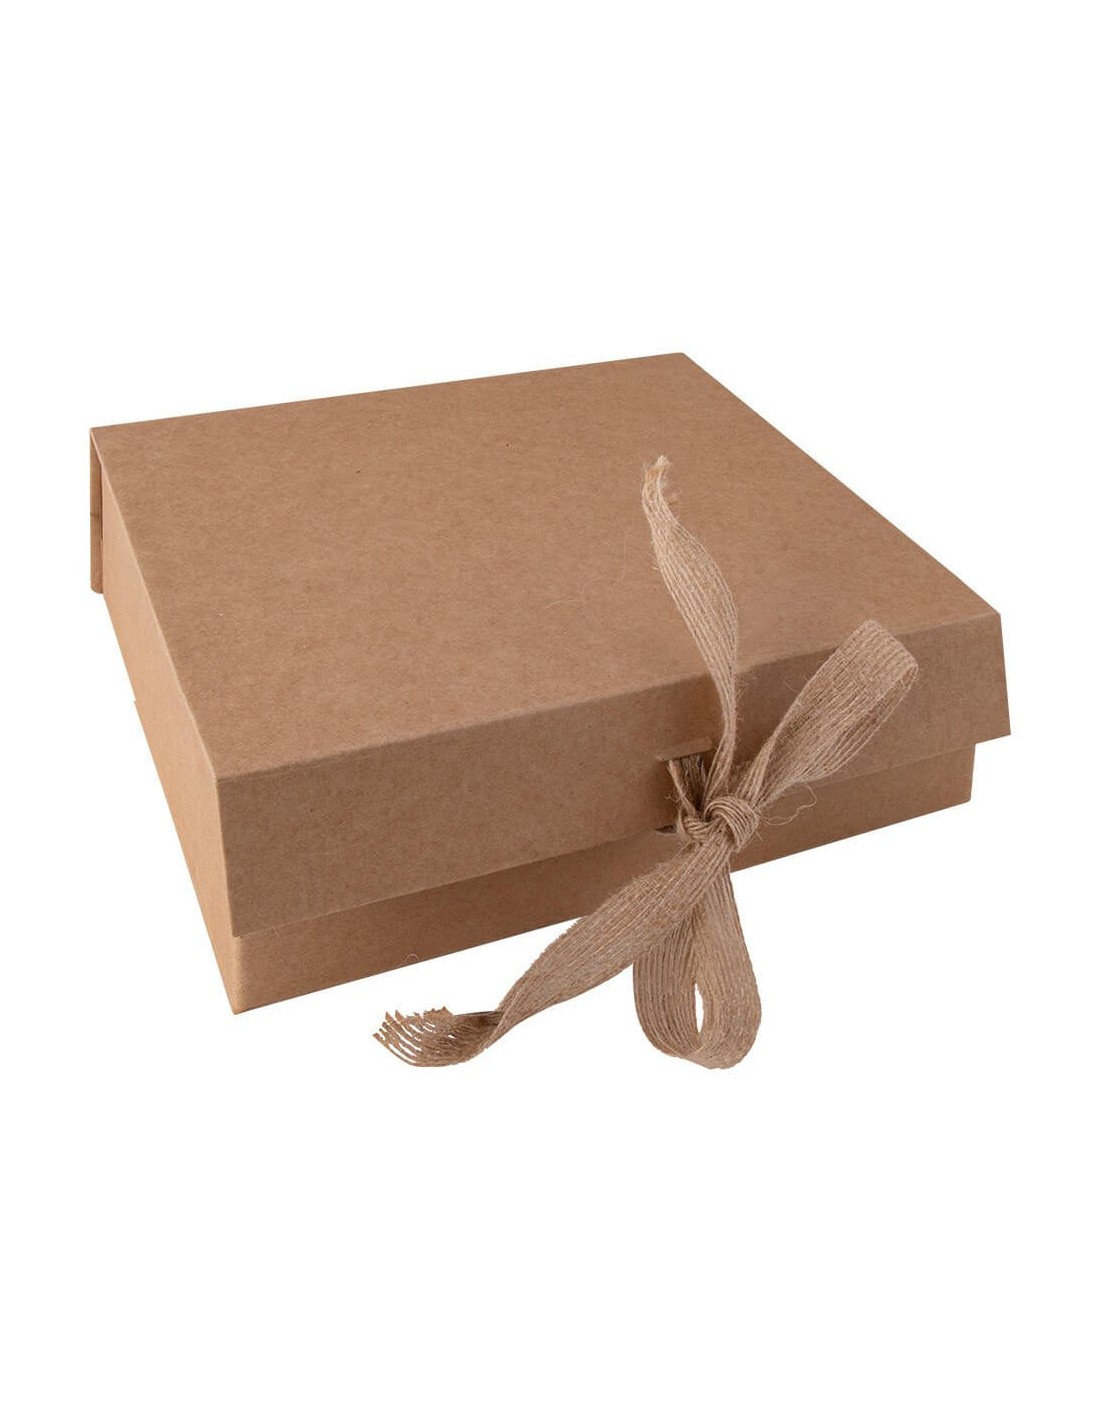 Caja de Cartón para Cajas y Bolsas